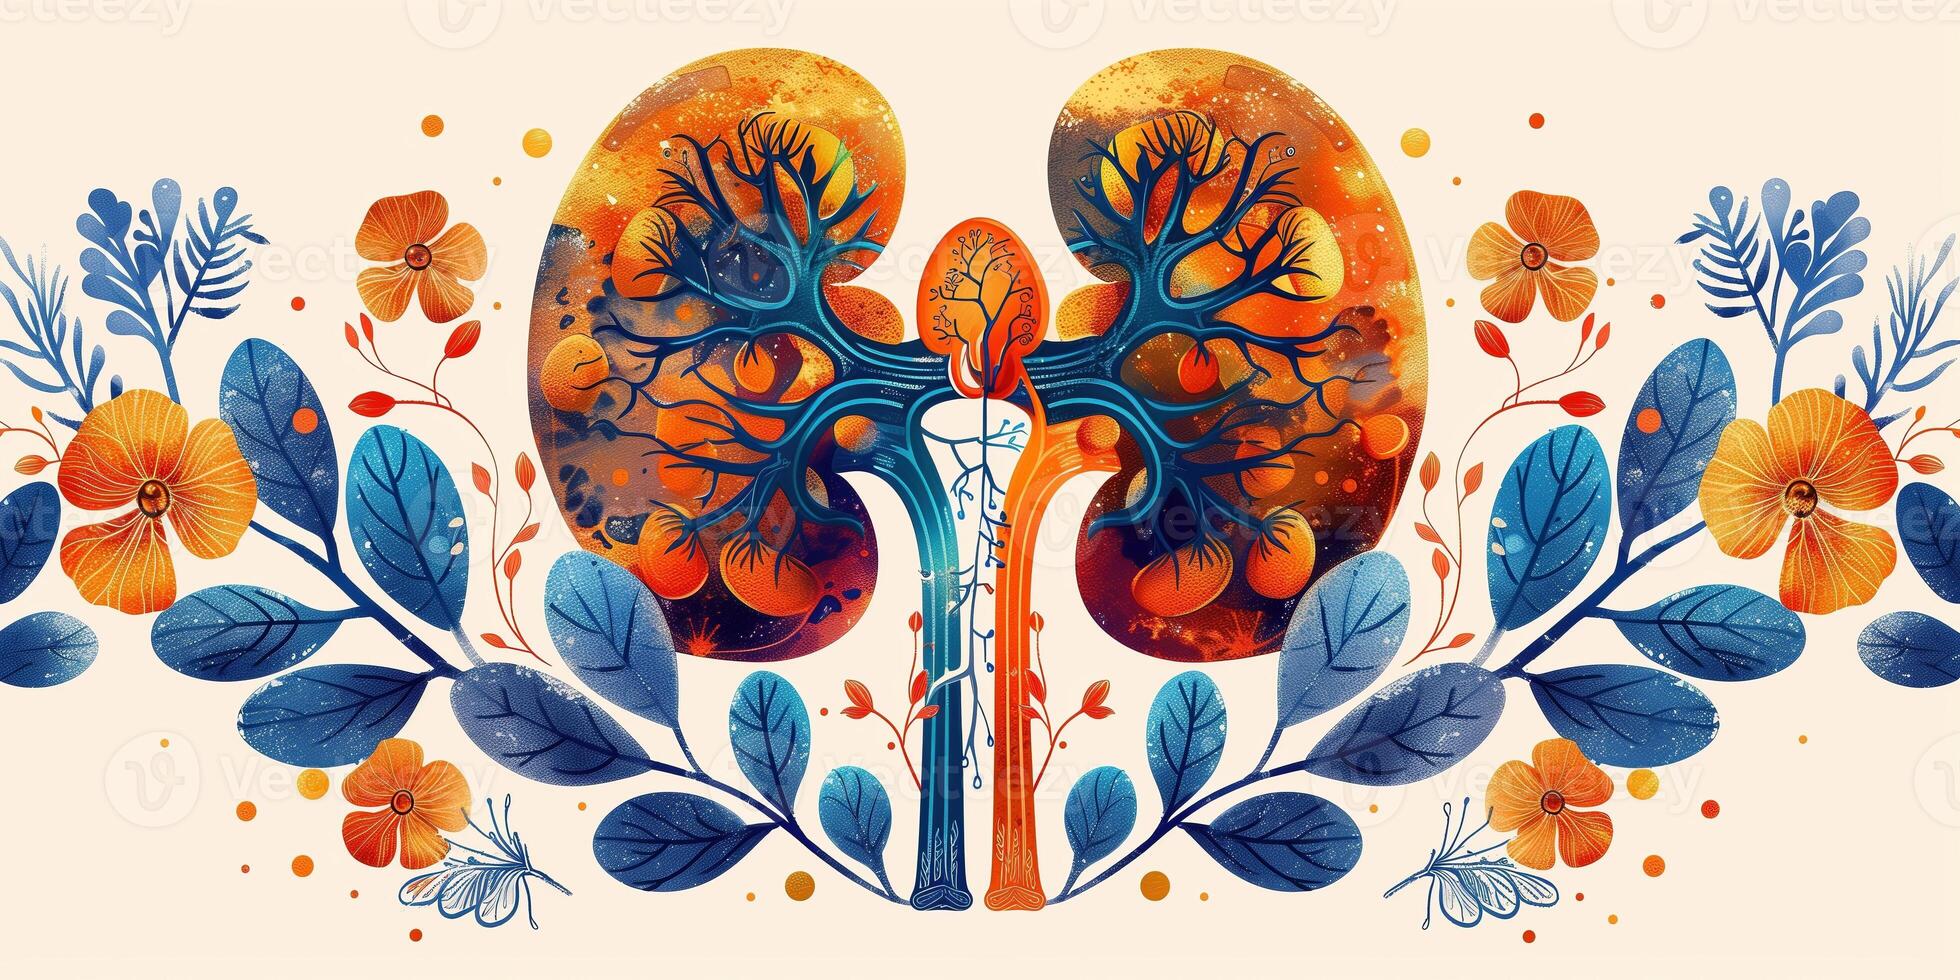 ai generado ilustración de humano riñón órganos en Arte estilo para médico temas foto